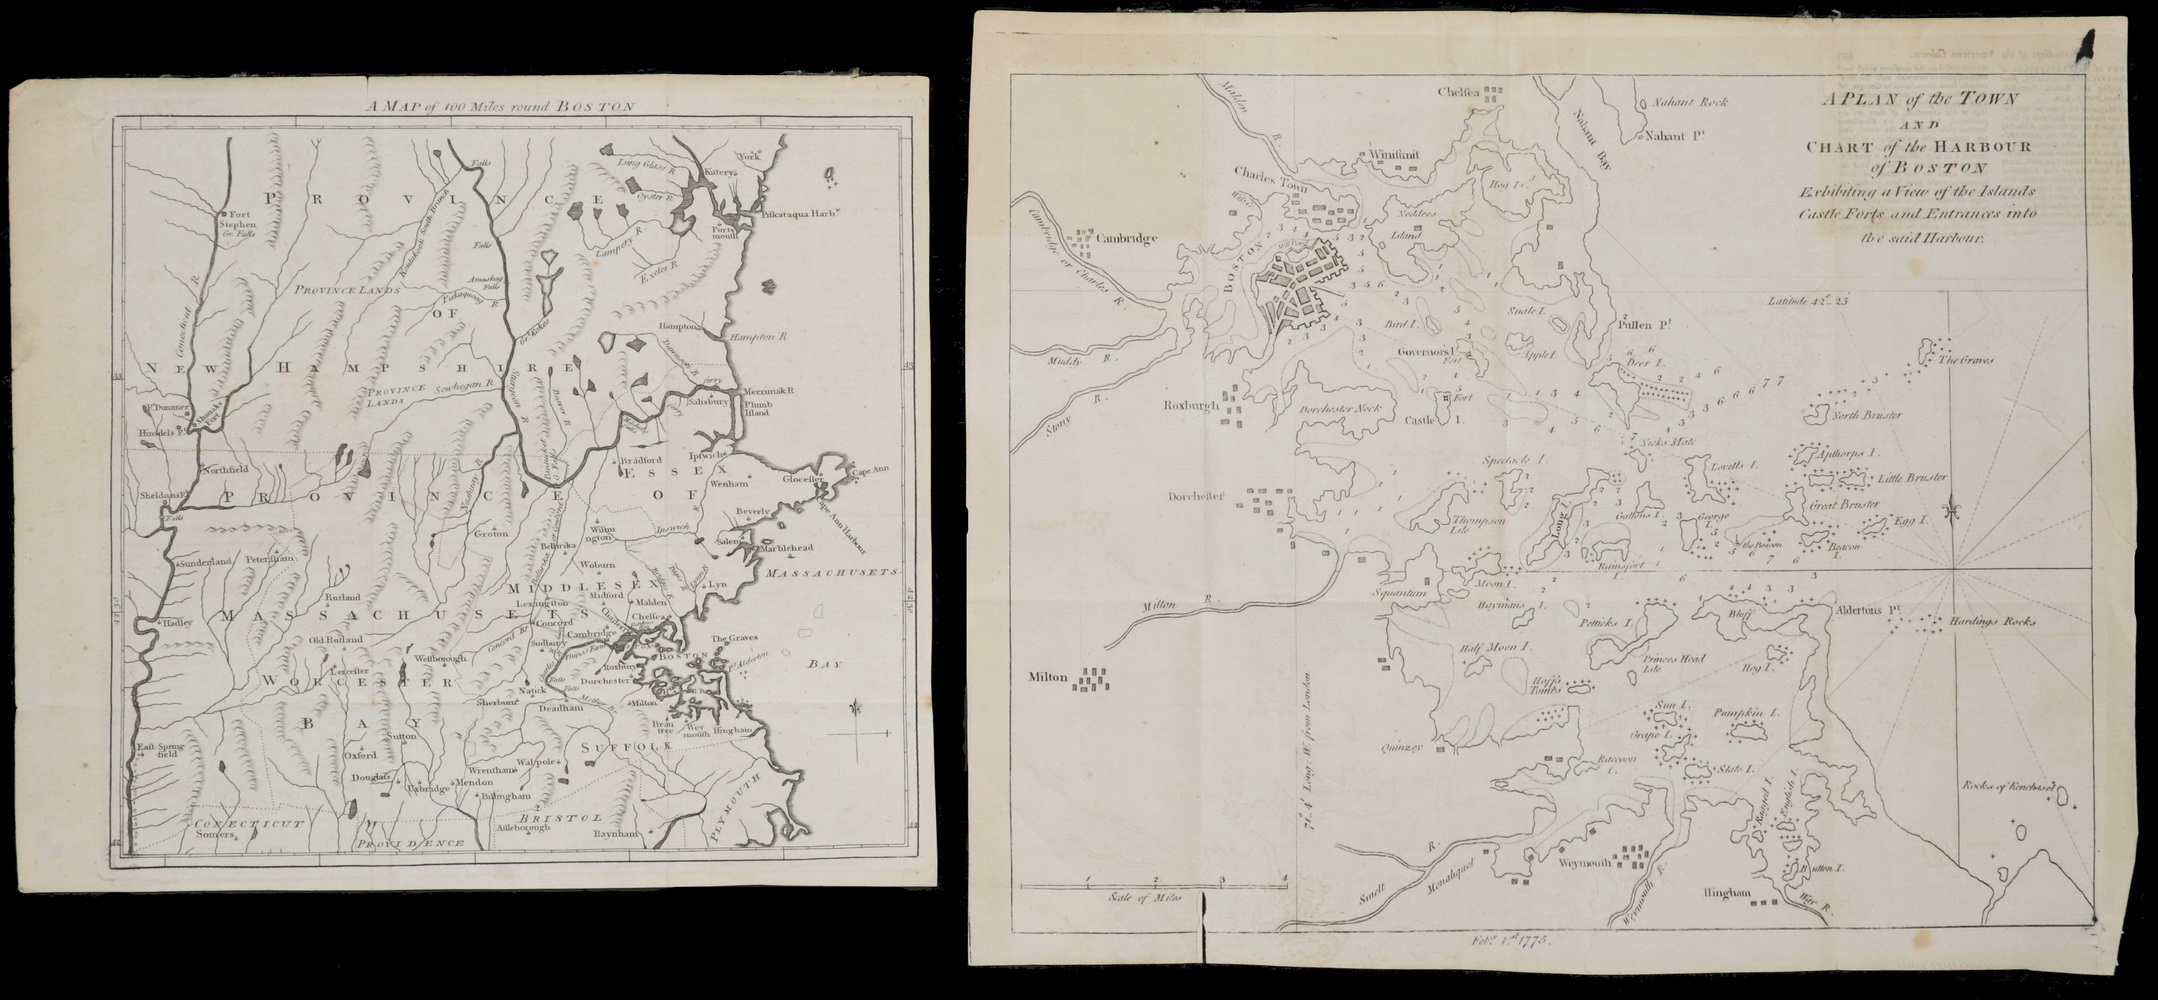  2 EARLY UNFRAMED MAPS OF BOSTON  2b4a25